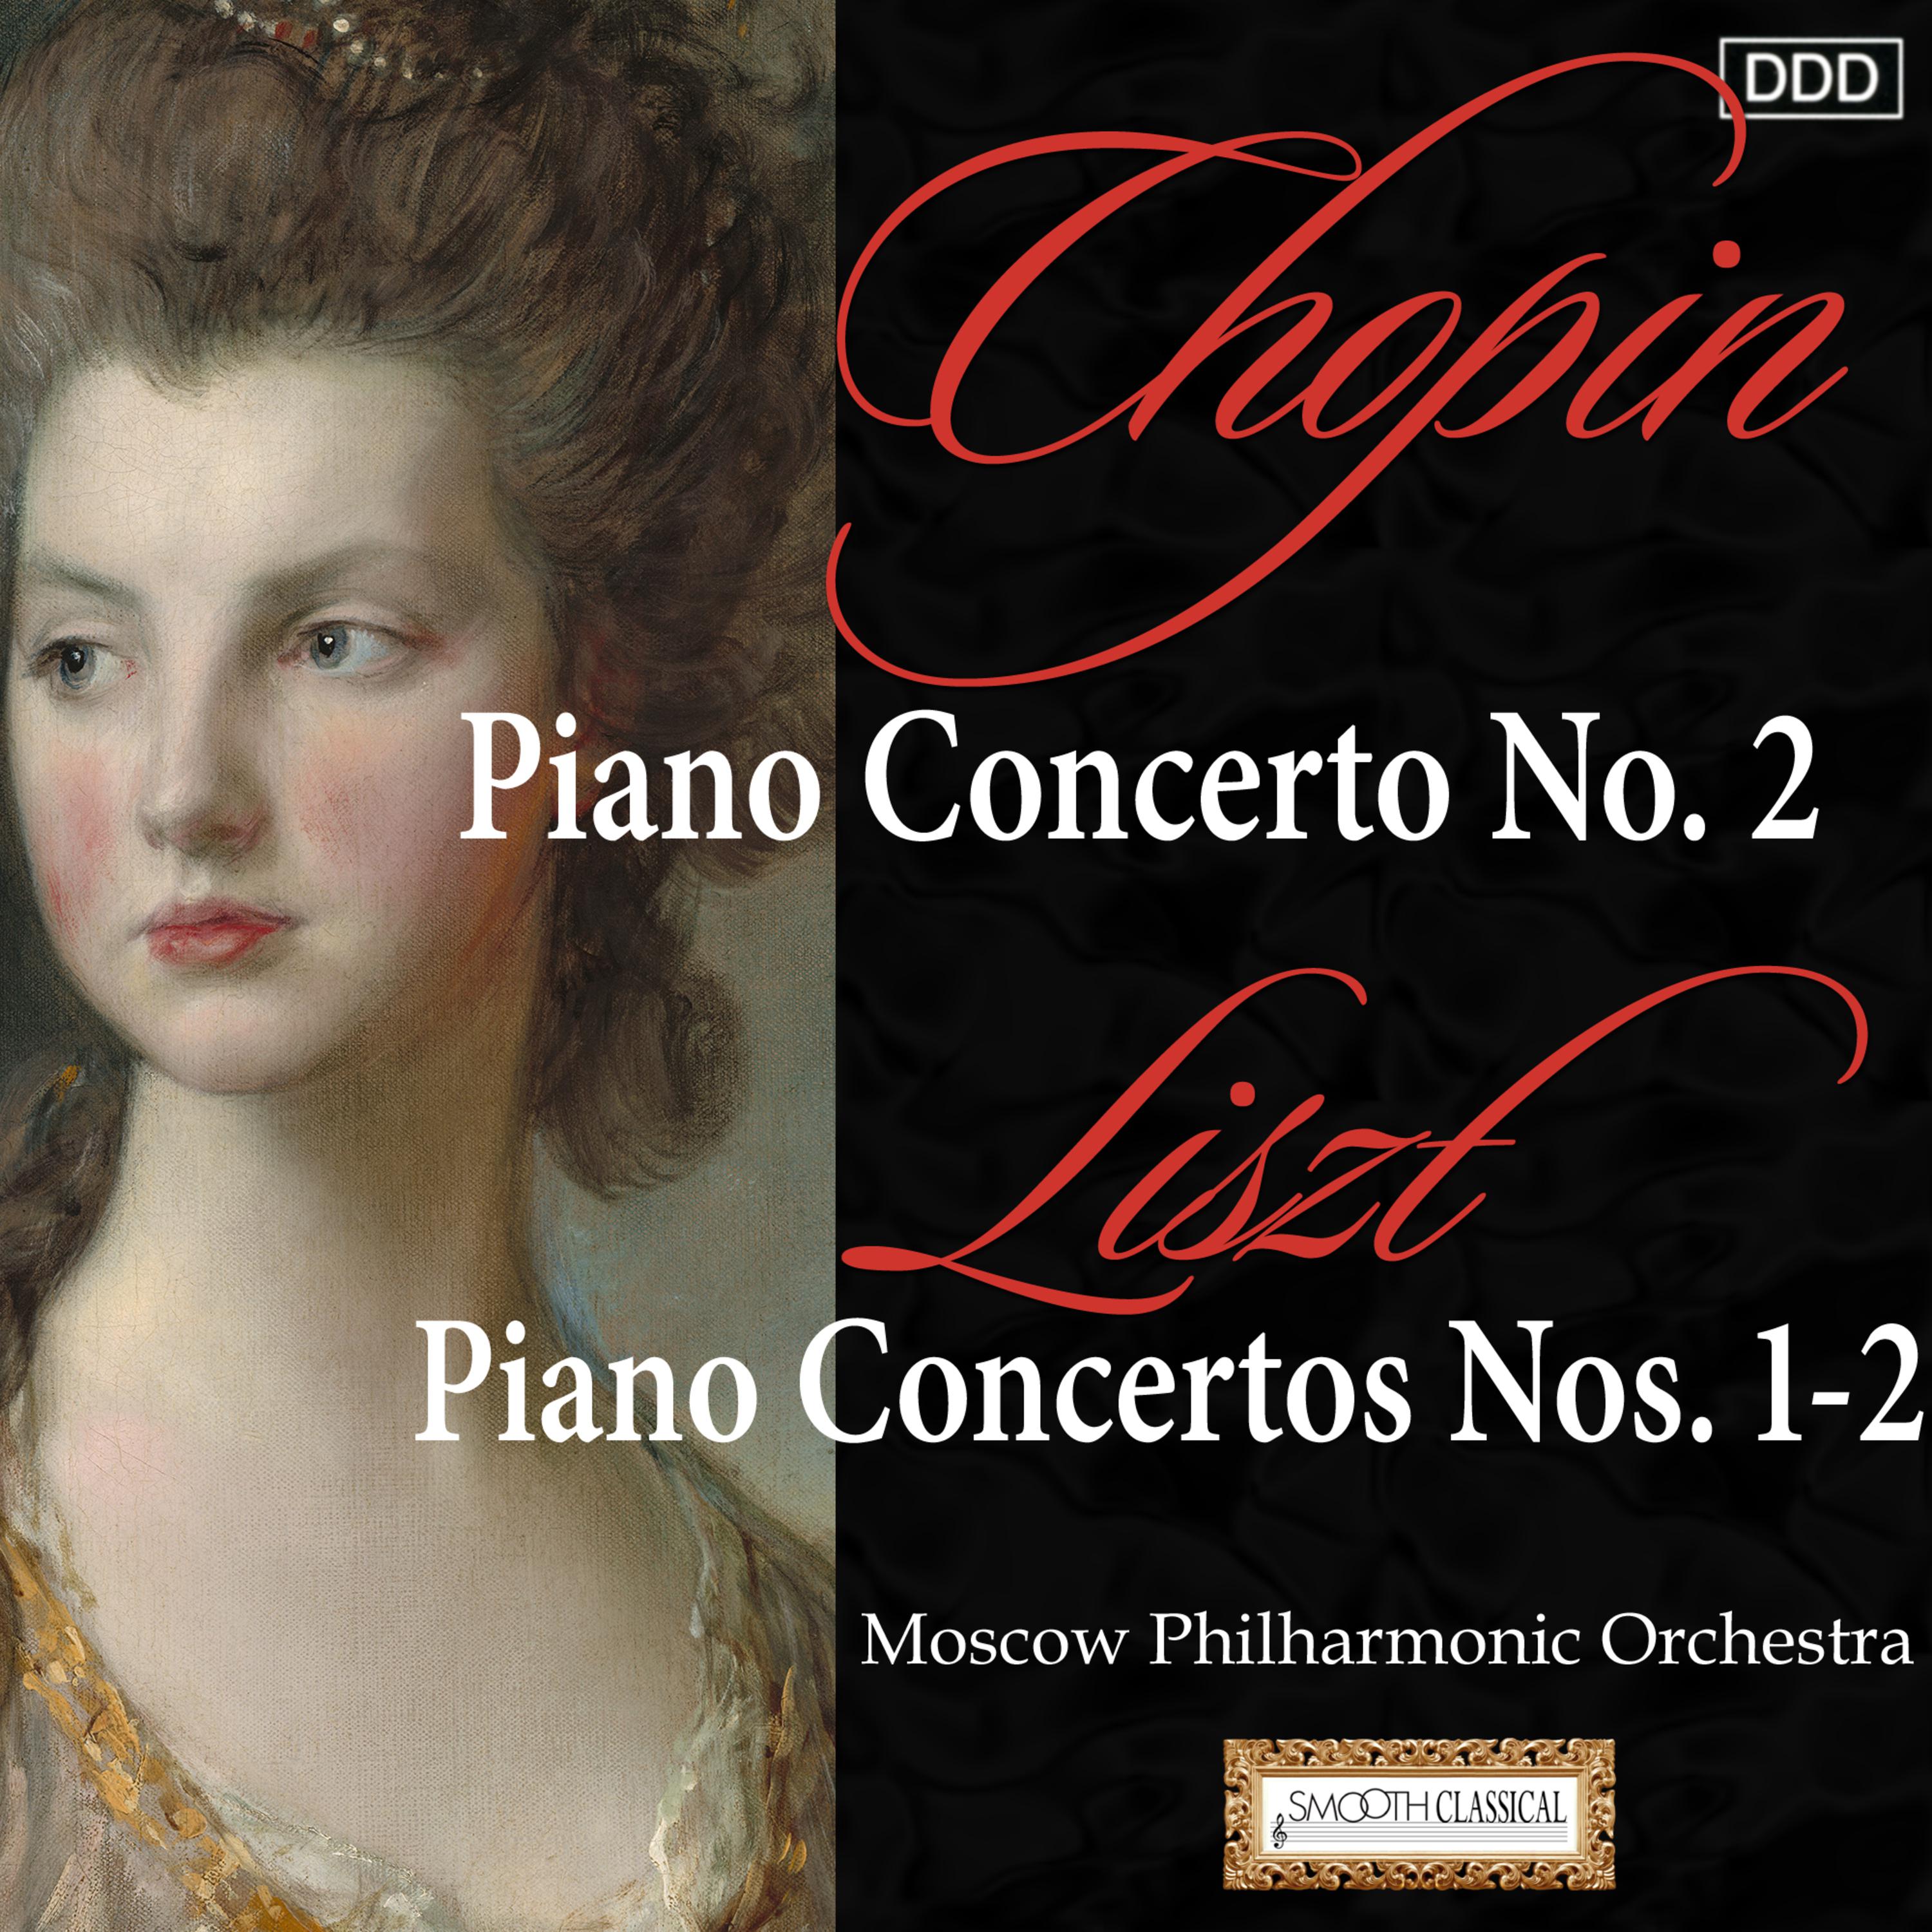 Piano Concerto No. 1 in E-Flat Major, S. 124: Allegro maestoso - Tempo giusto